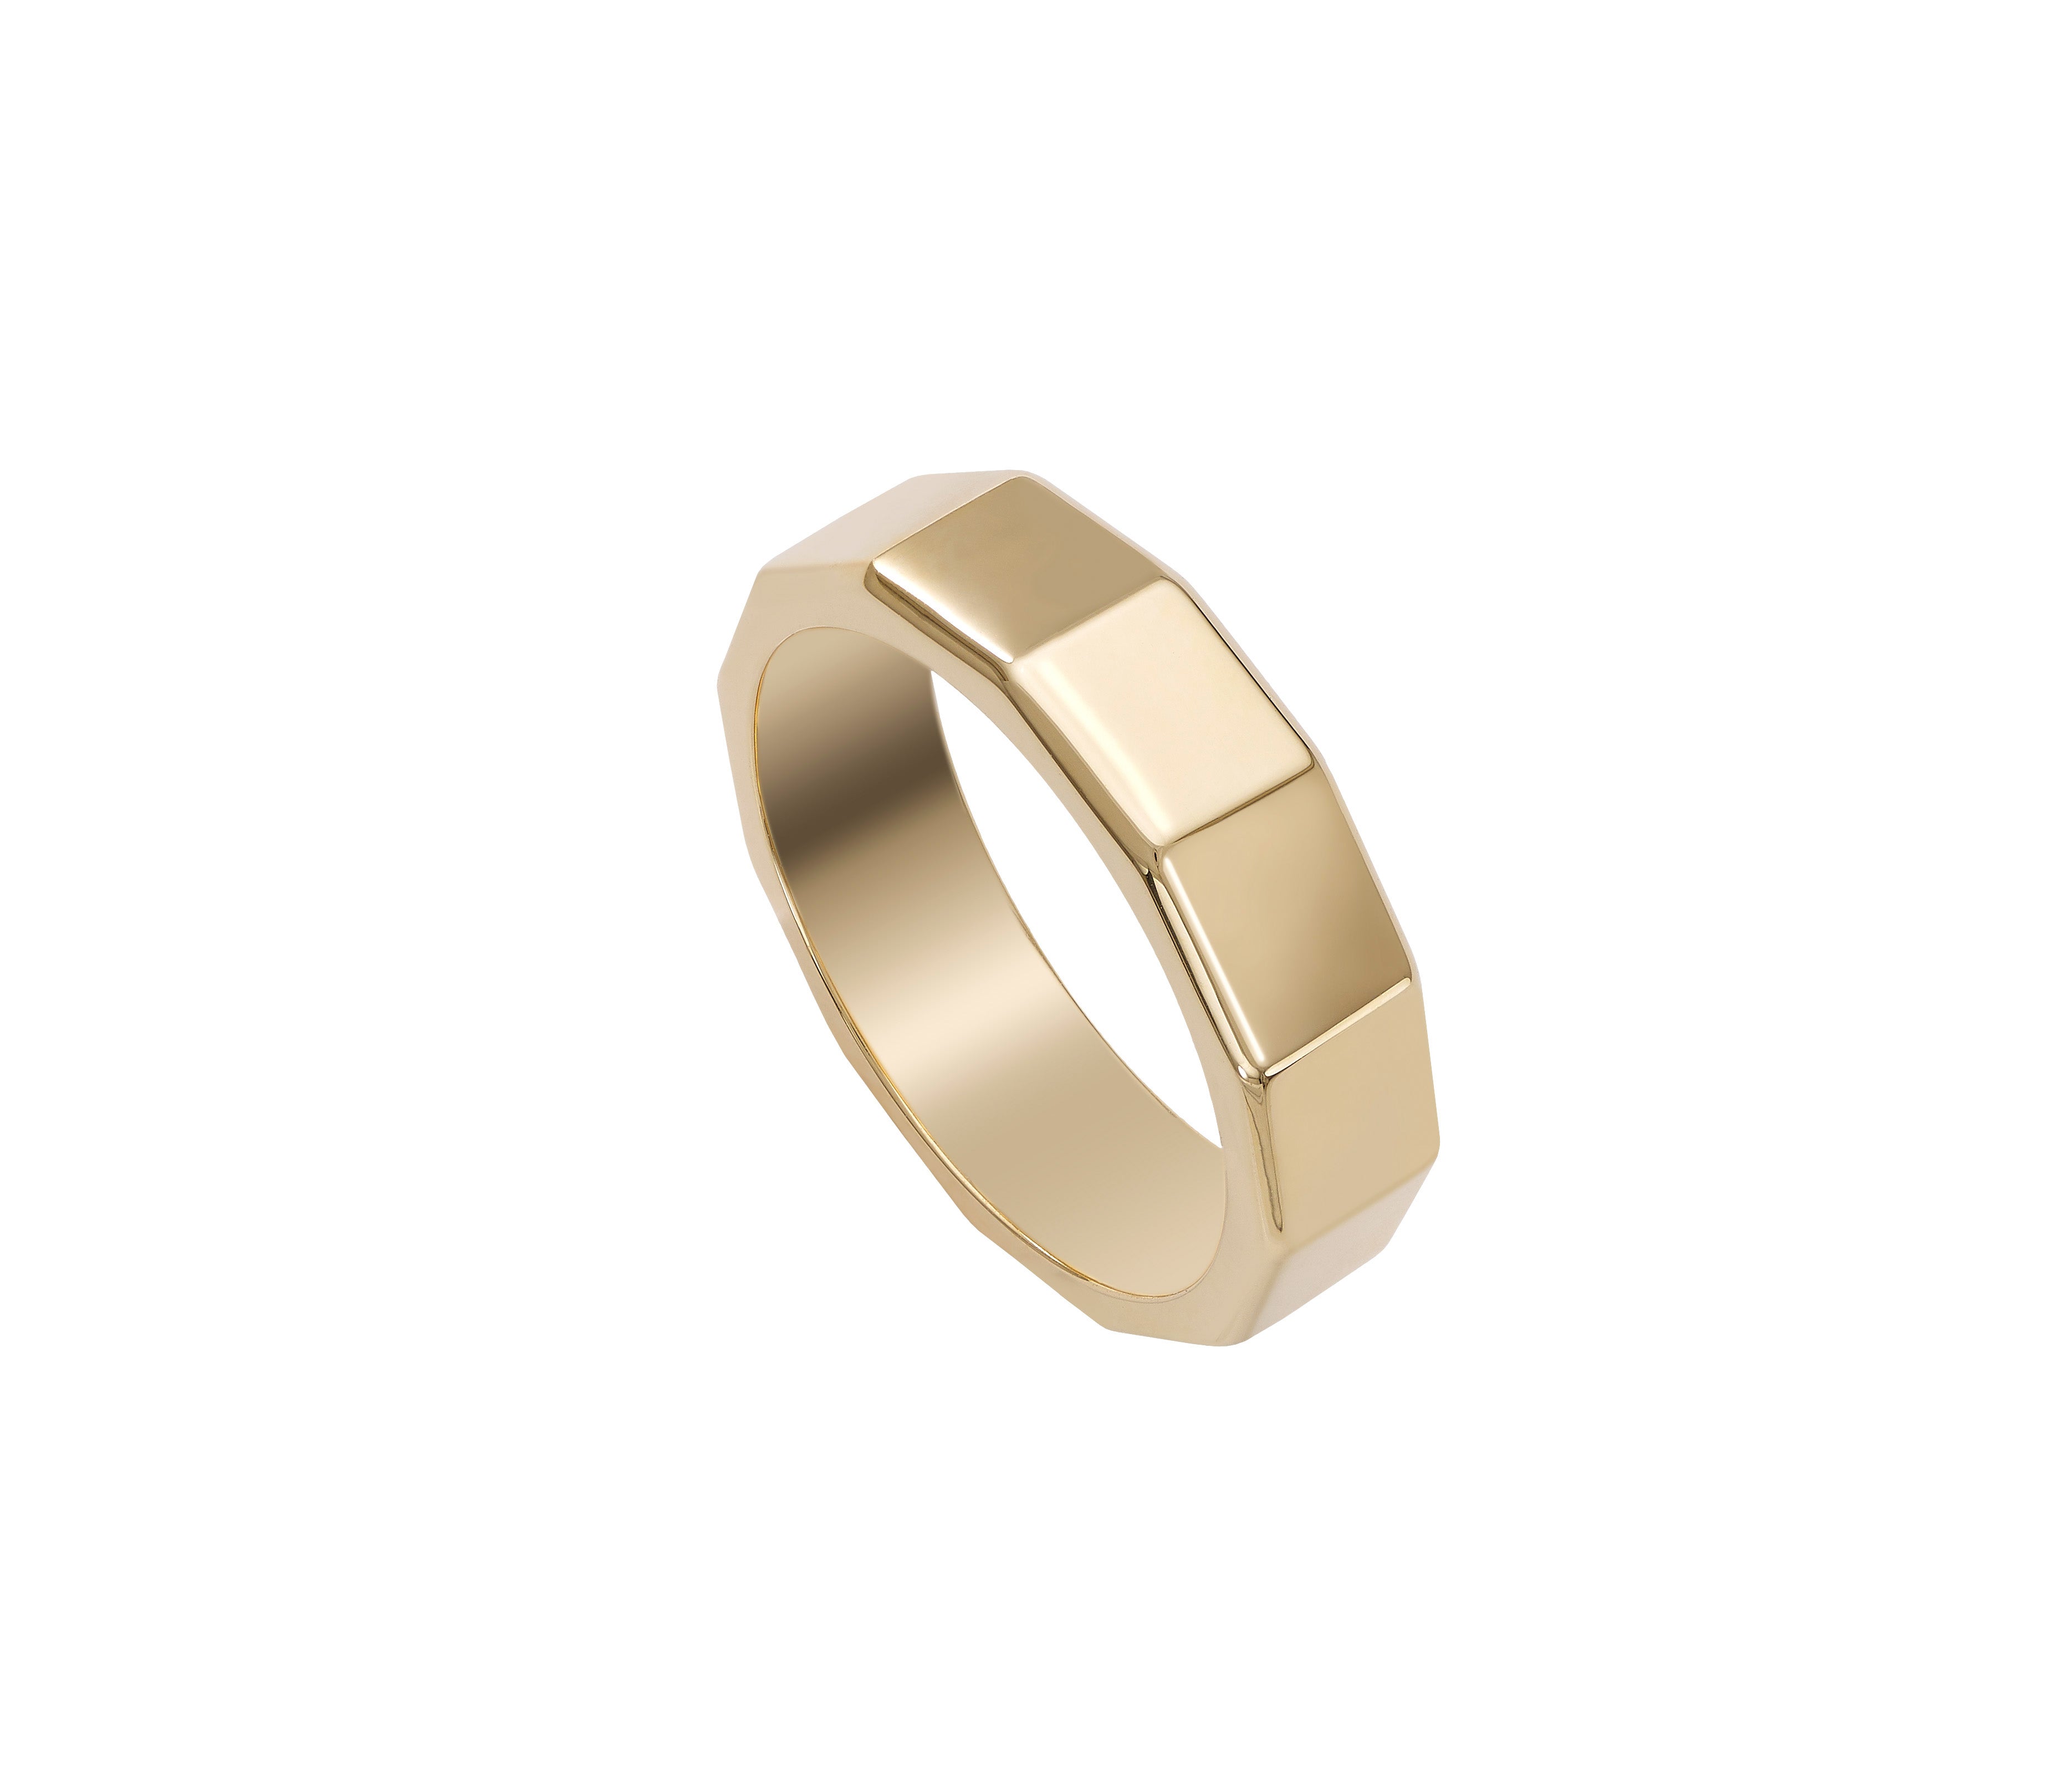 Devam Geometric 18k Gold Ring